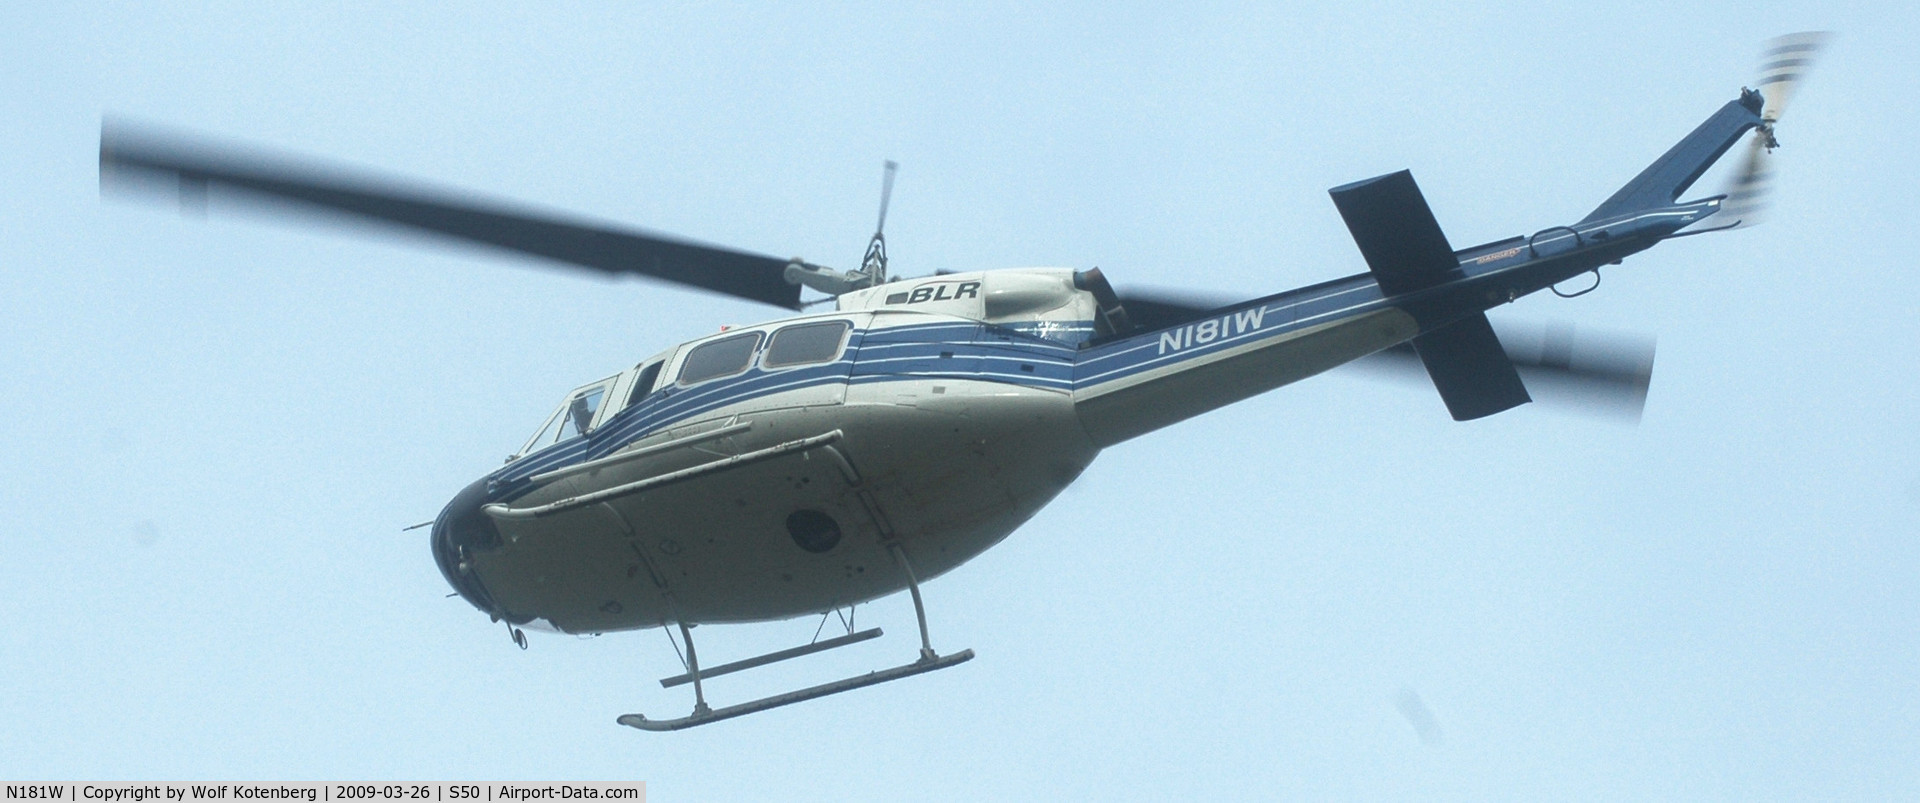 N181W, 1992 Bell 212 C/N 35058, loud